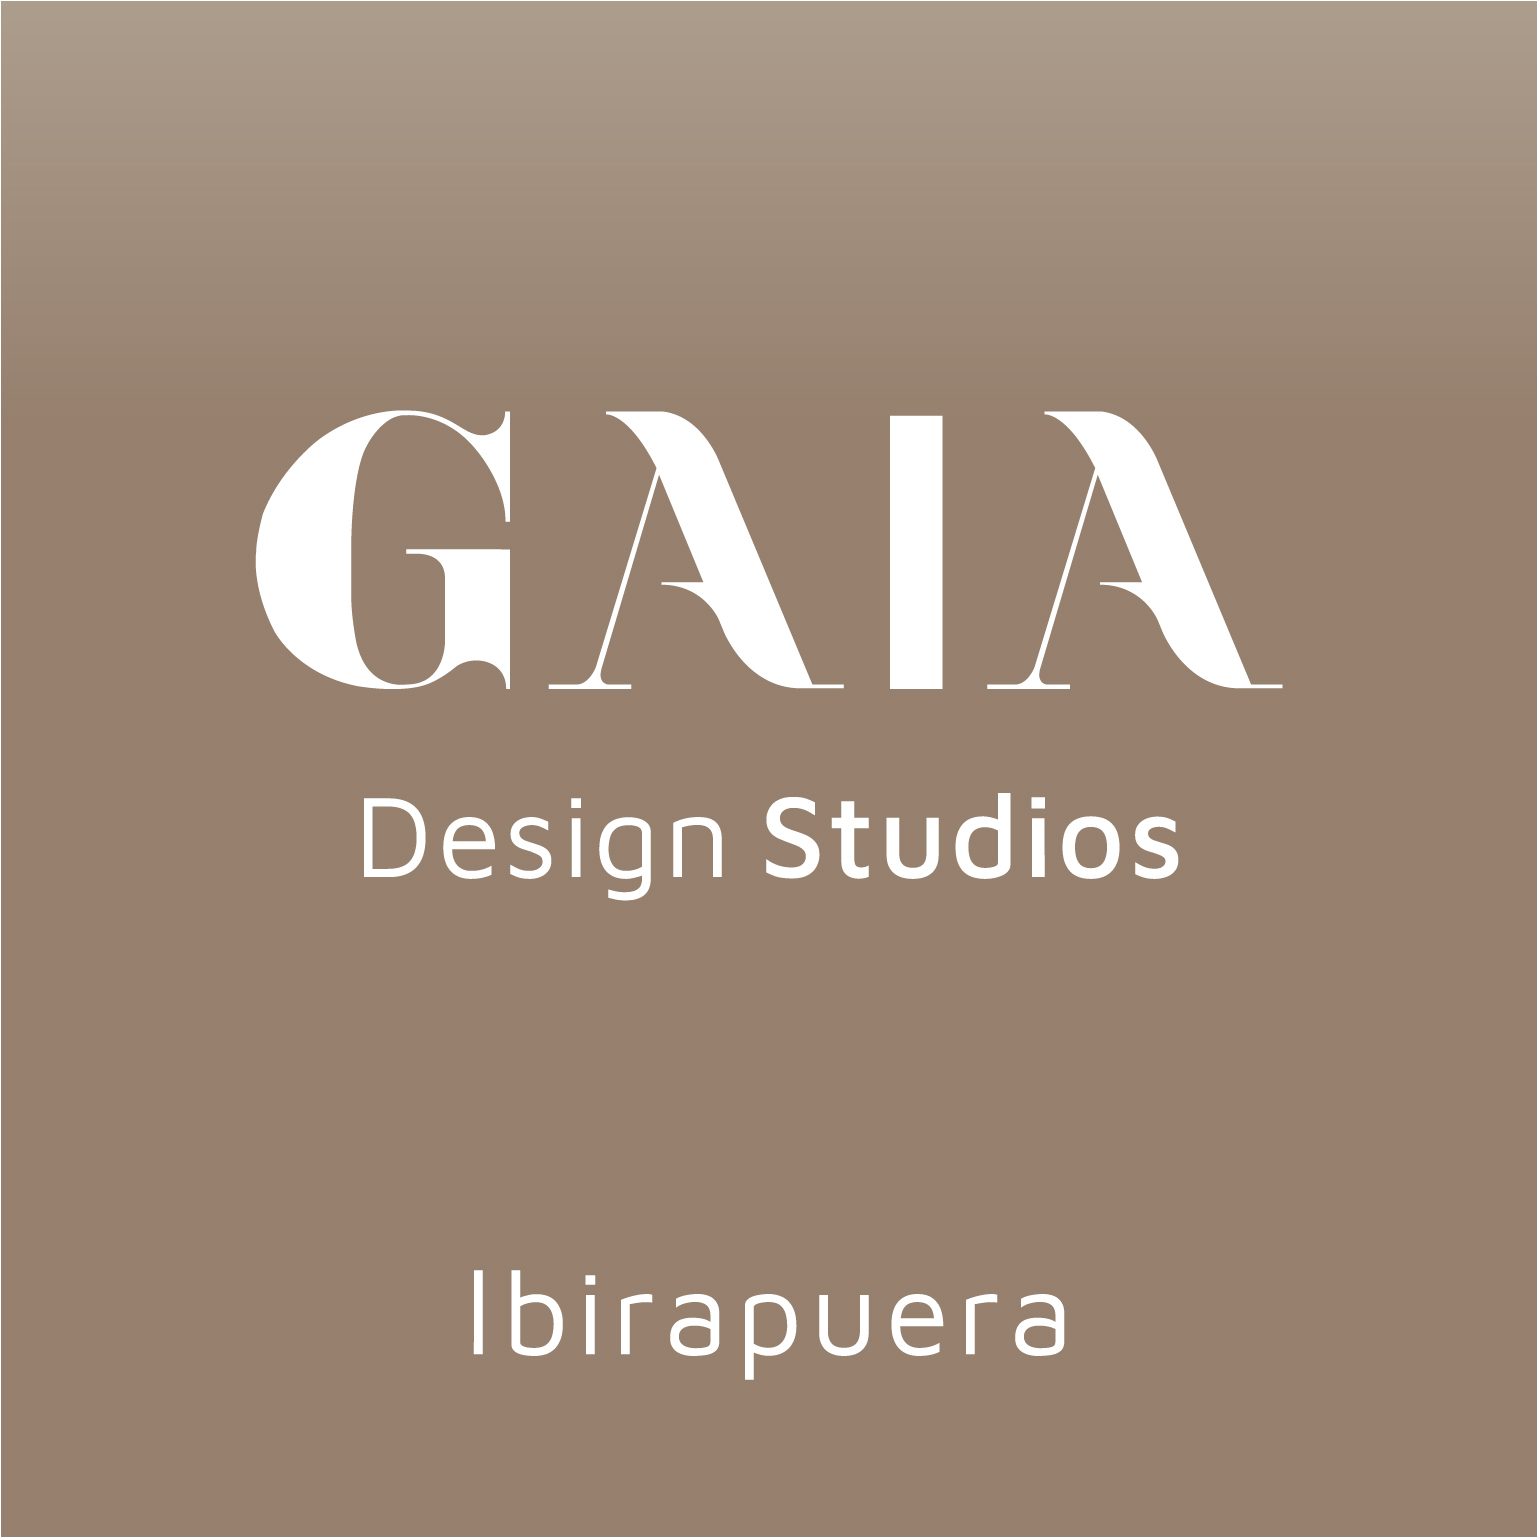 Gaia Design Studios